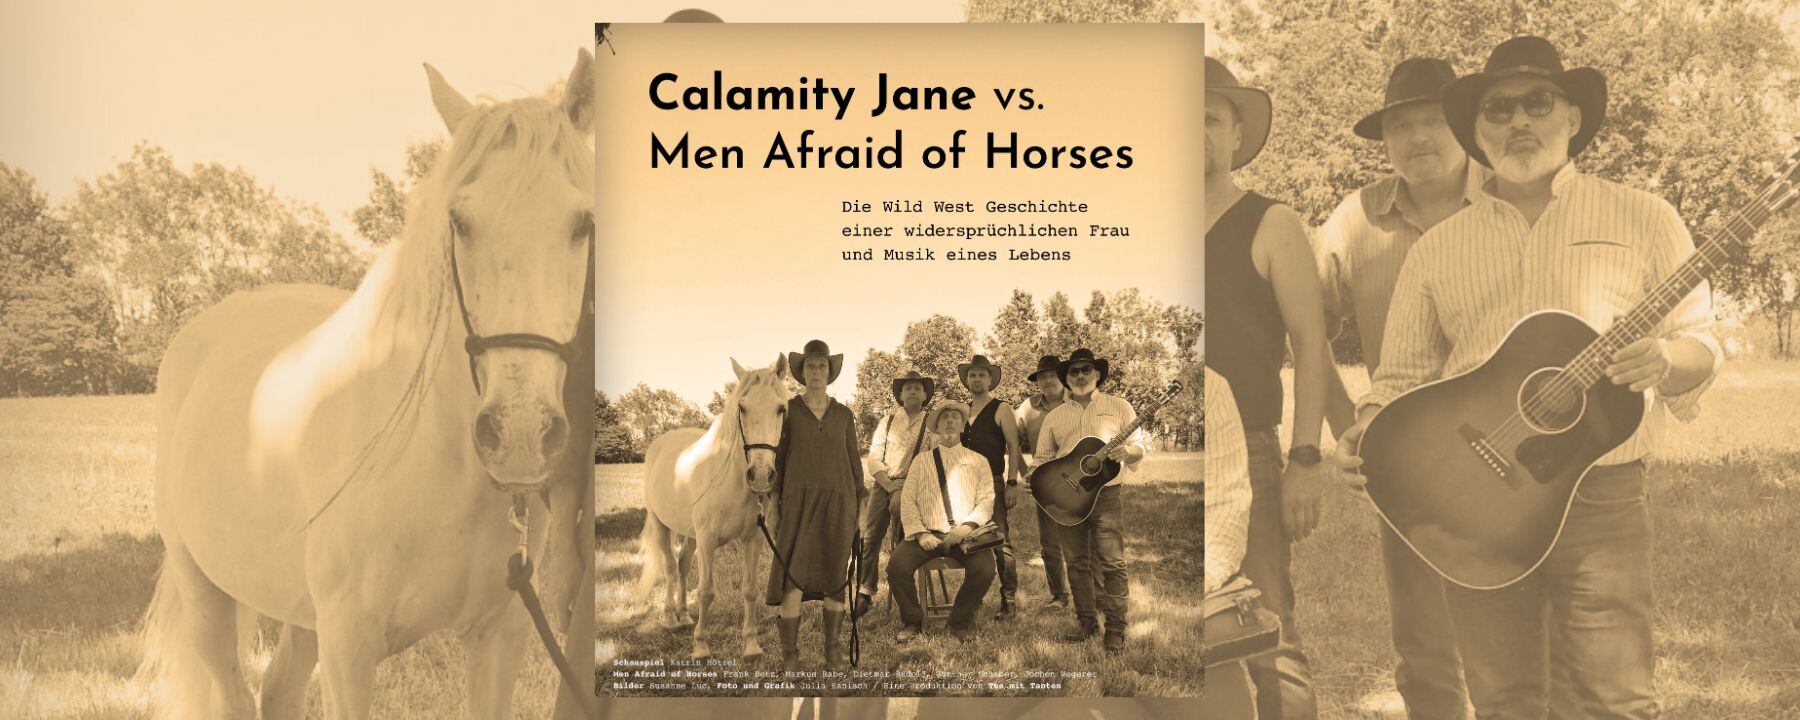 Calamity Jane vs. Men Afraid of Horses